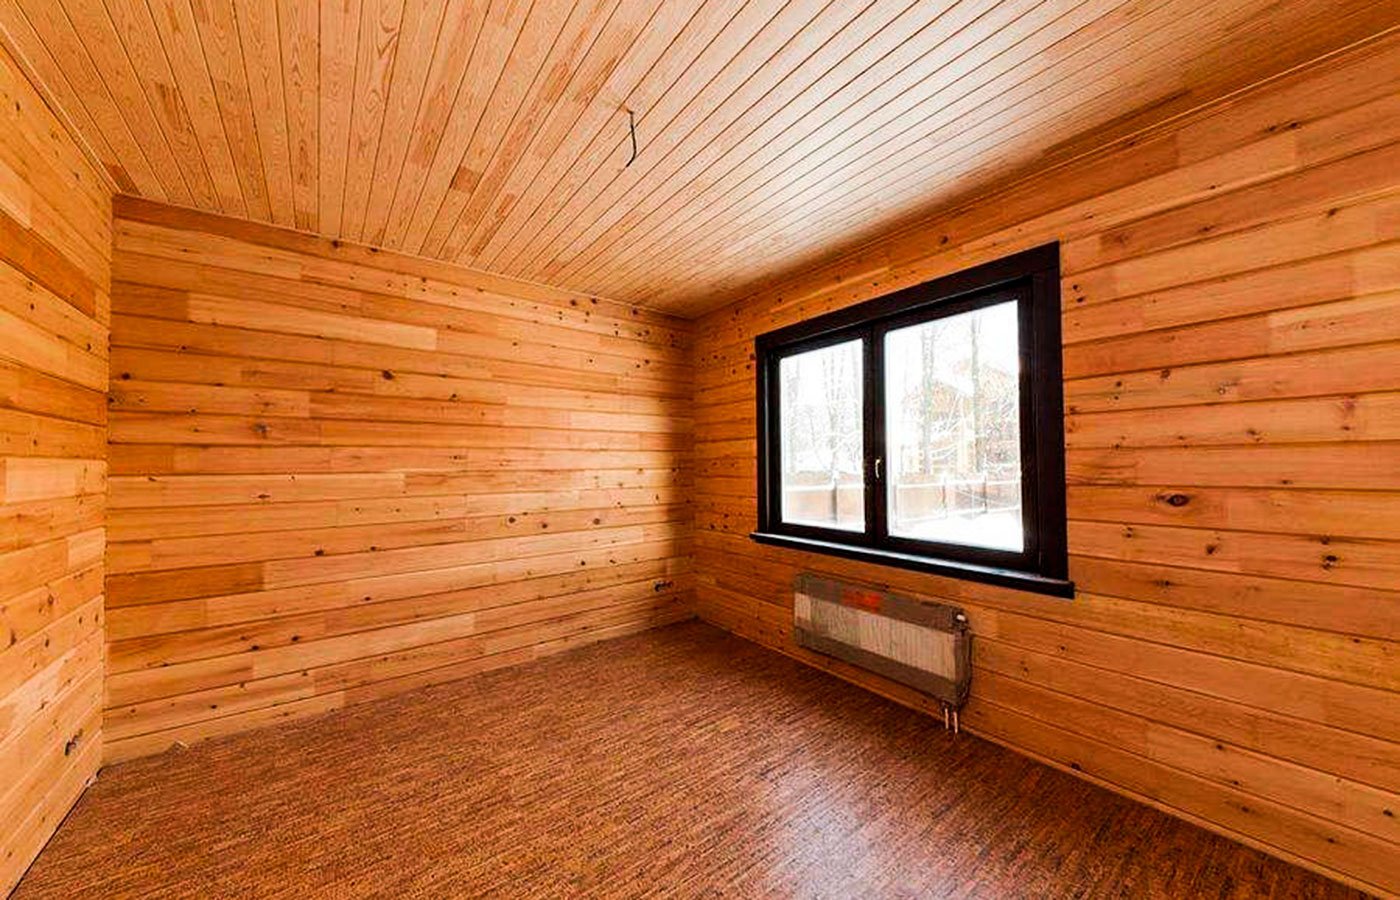 Внутренняя отделка дачного дома: чем обшить стены, пол, потолок- плюсы и минусы + фото и видео